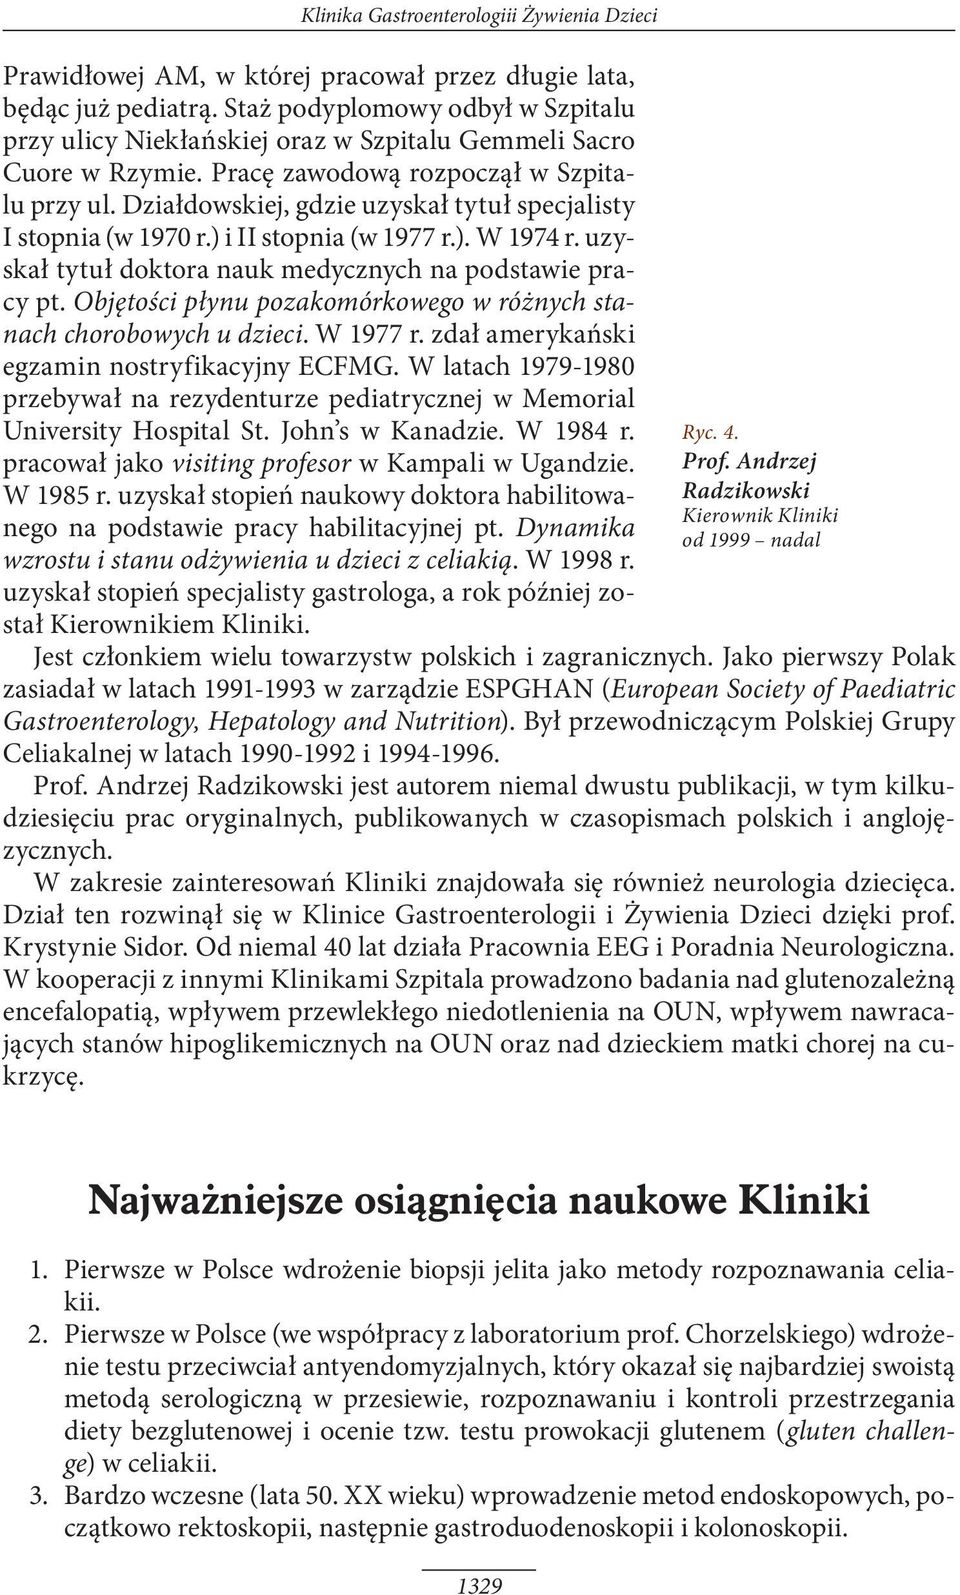 Działdowskiej, gdzie uzyskał tytuł specjalisty I stopnia (w 1970 r.) i II stopnia (w 1977 r.). W 1974 r. uzyskał tytuł doktora nauk medycznych na podstawie pracy pt.